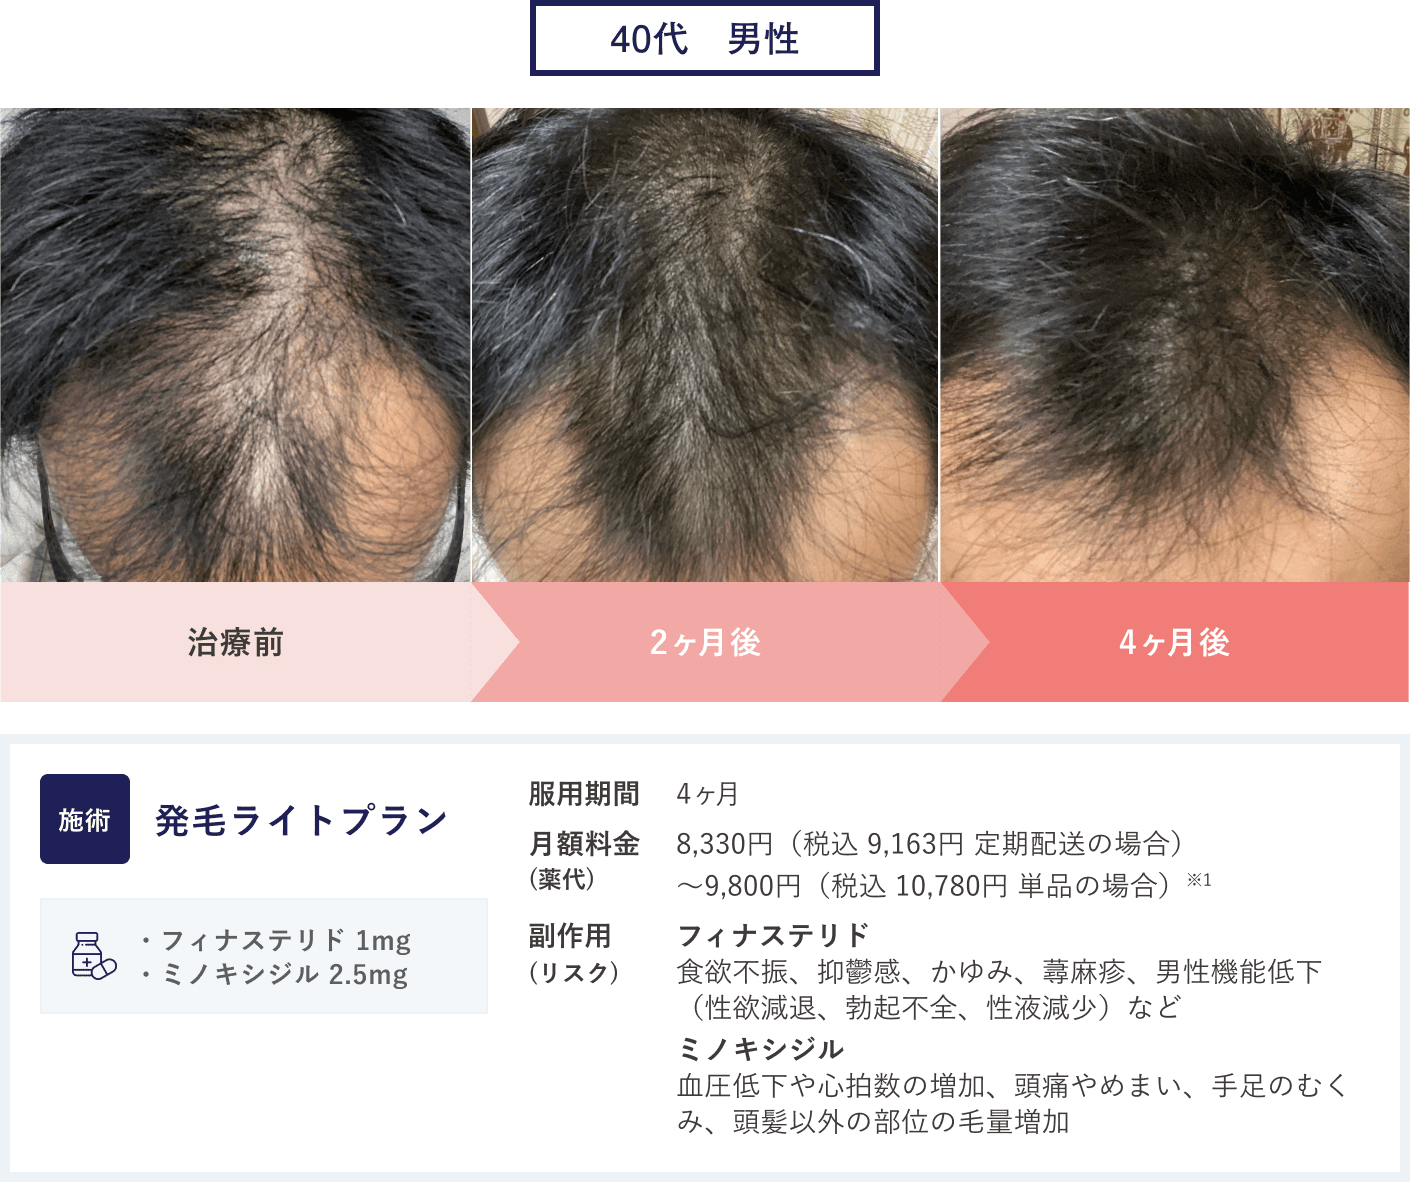 27歳男性のAGA治療「発毛ライトプラン」の症例